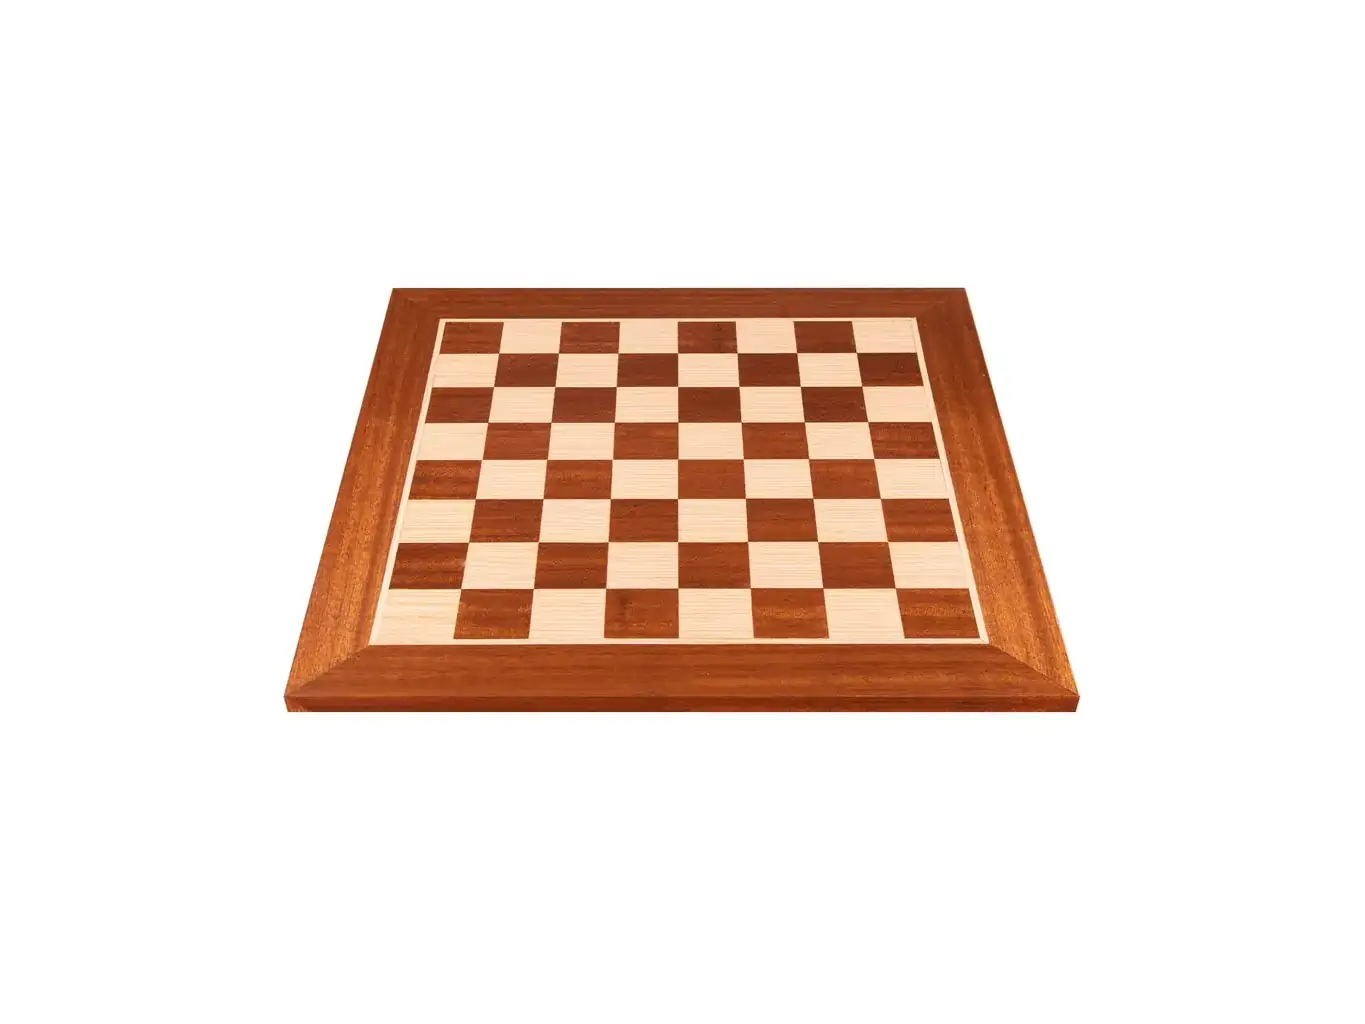 Ξύλινη σκακιέρα μαόνι και δρυς 34x34 | Χειροποίητη ξύλινη σκακιέρα